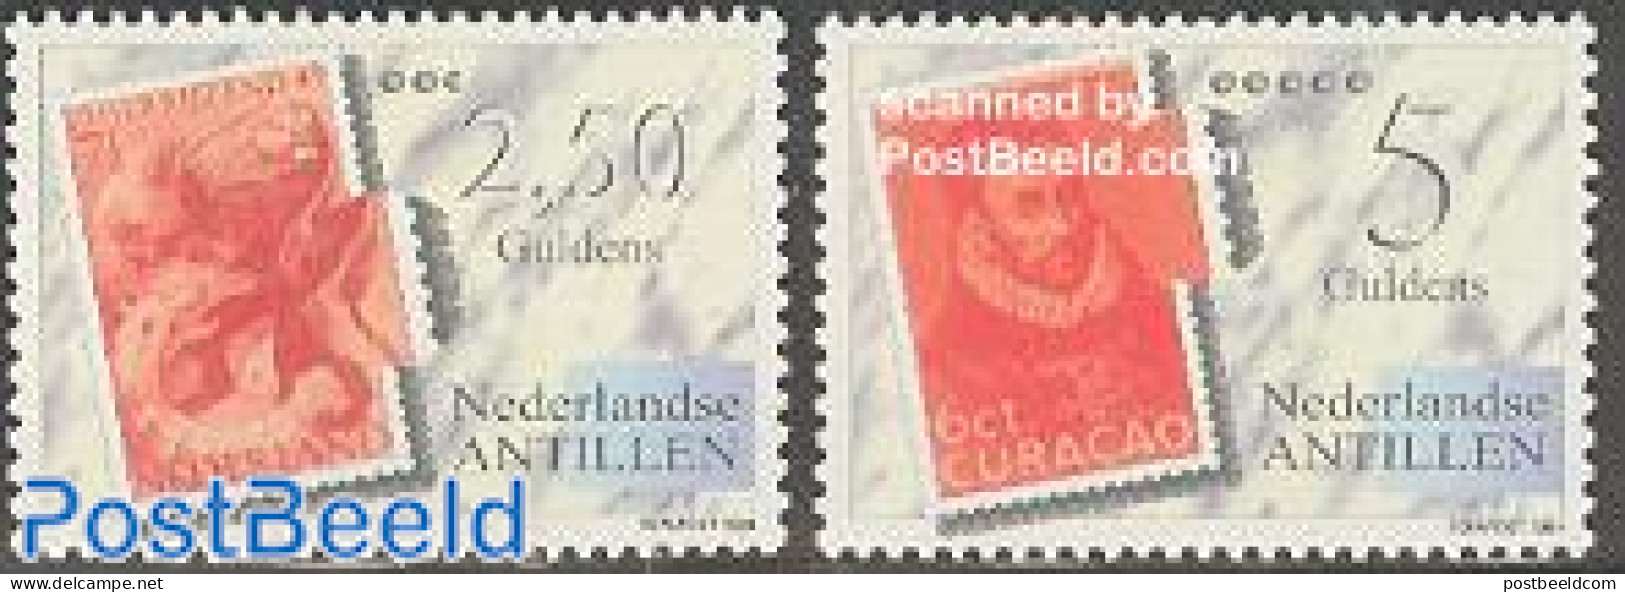 Netherlands Antilles 1994 Fepapost 2v, Mint NH, Philately - Stamps On Stamps - Stamps On Stamps